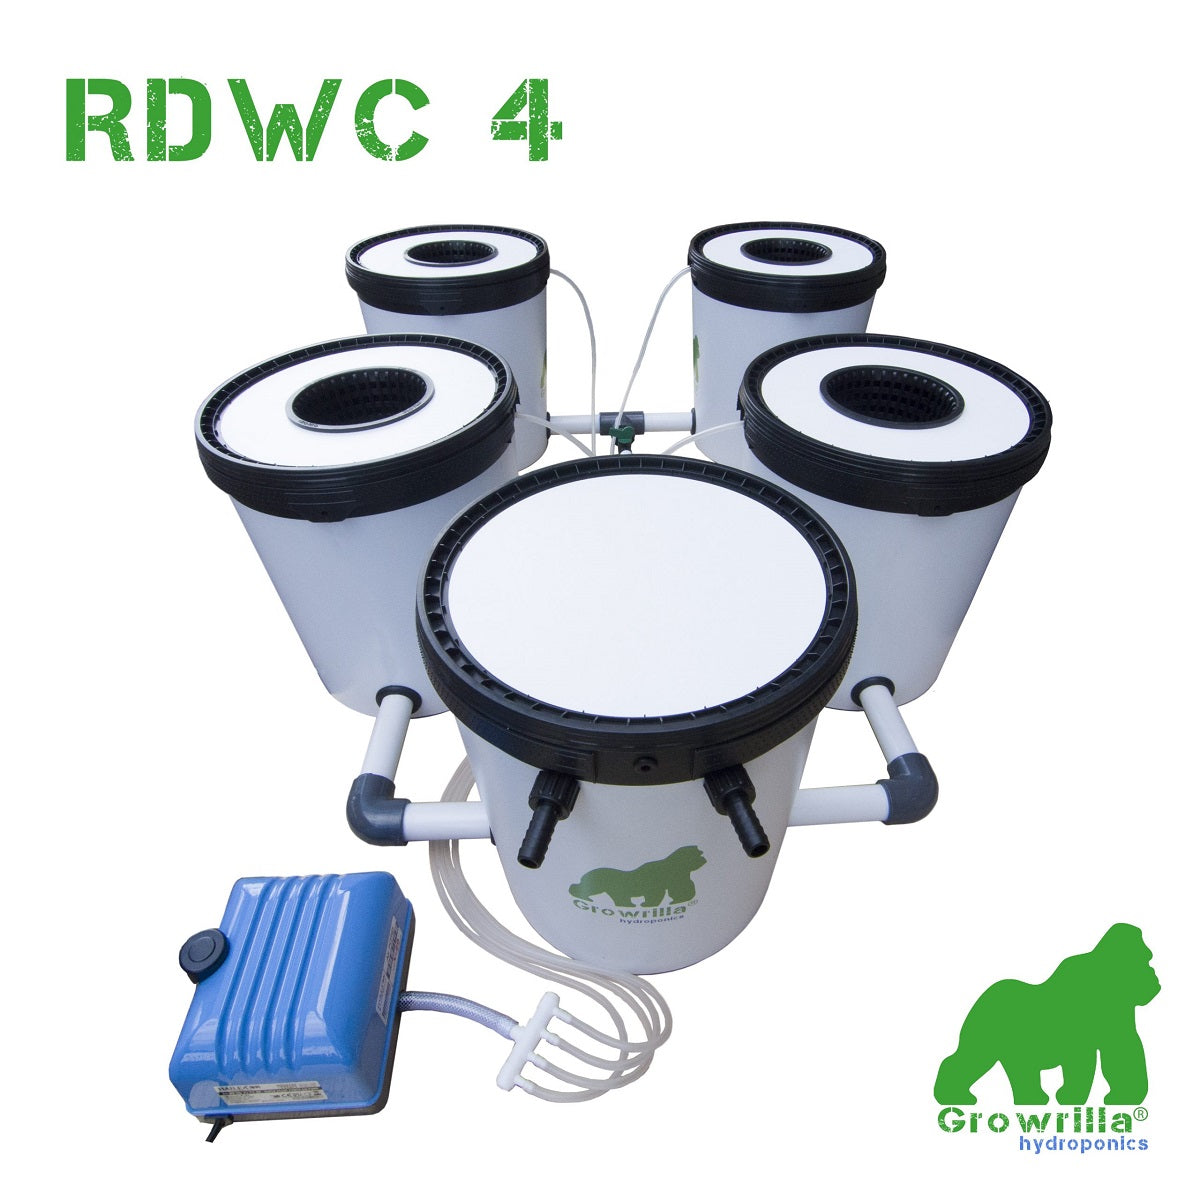 Le kit de culture Hydroponique Growrilla RDWC 4 pour tente de culture de 120x120x200cm